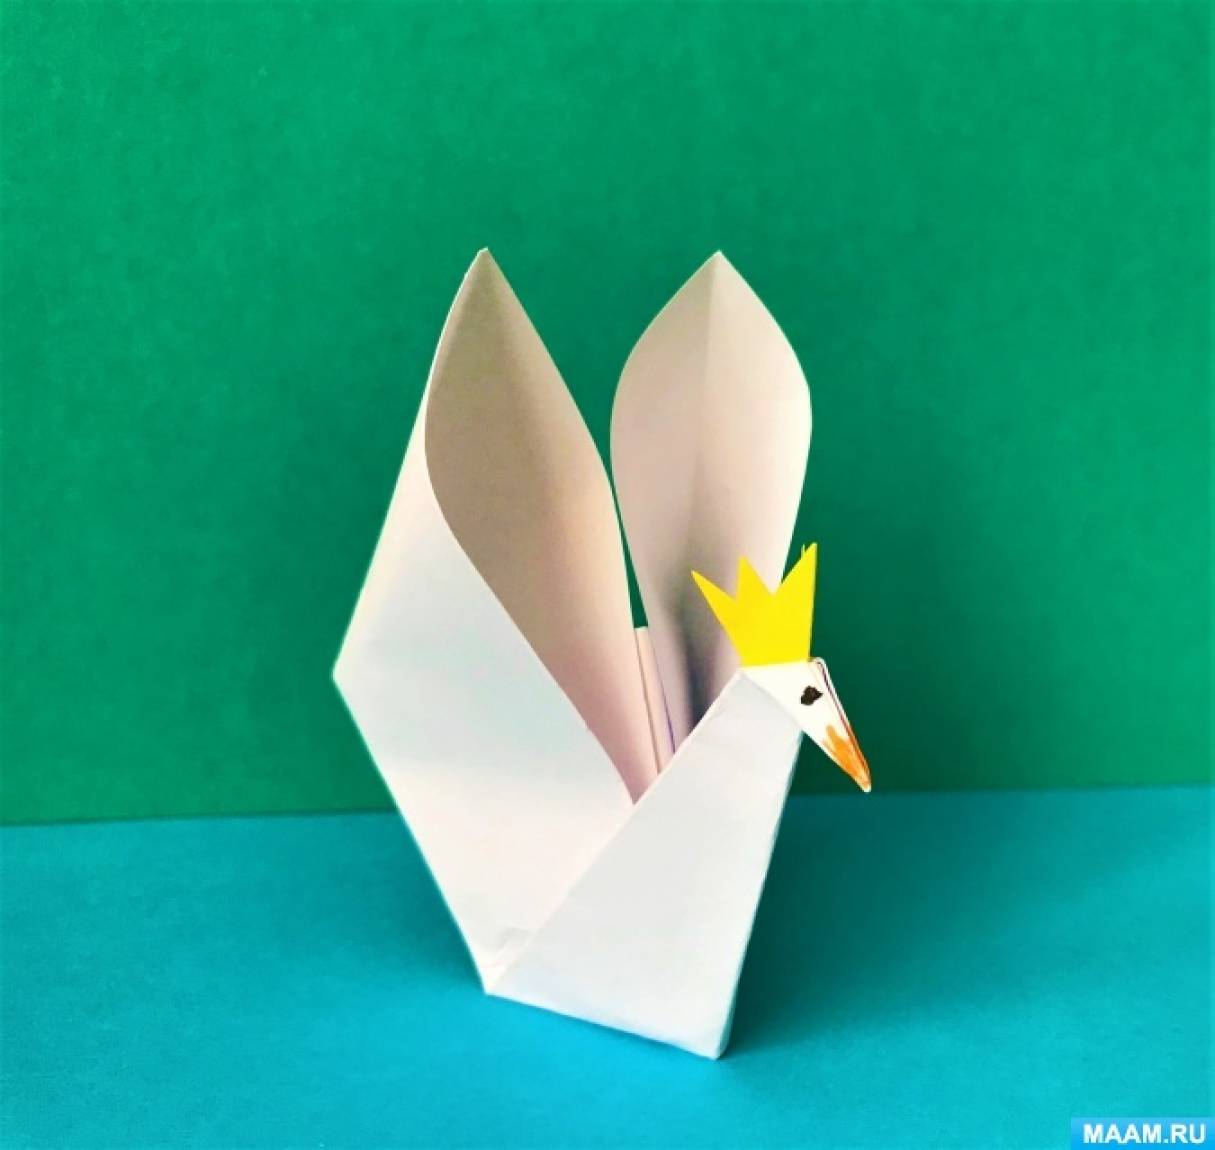 Мастер-класс по оригами из бумаги «Царевна Лебедь» для дошкольников